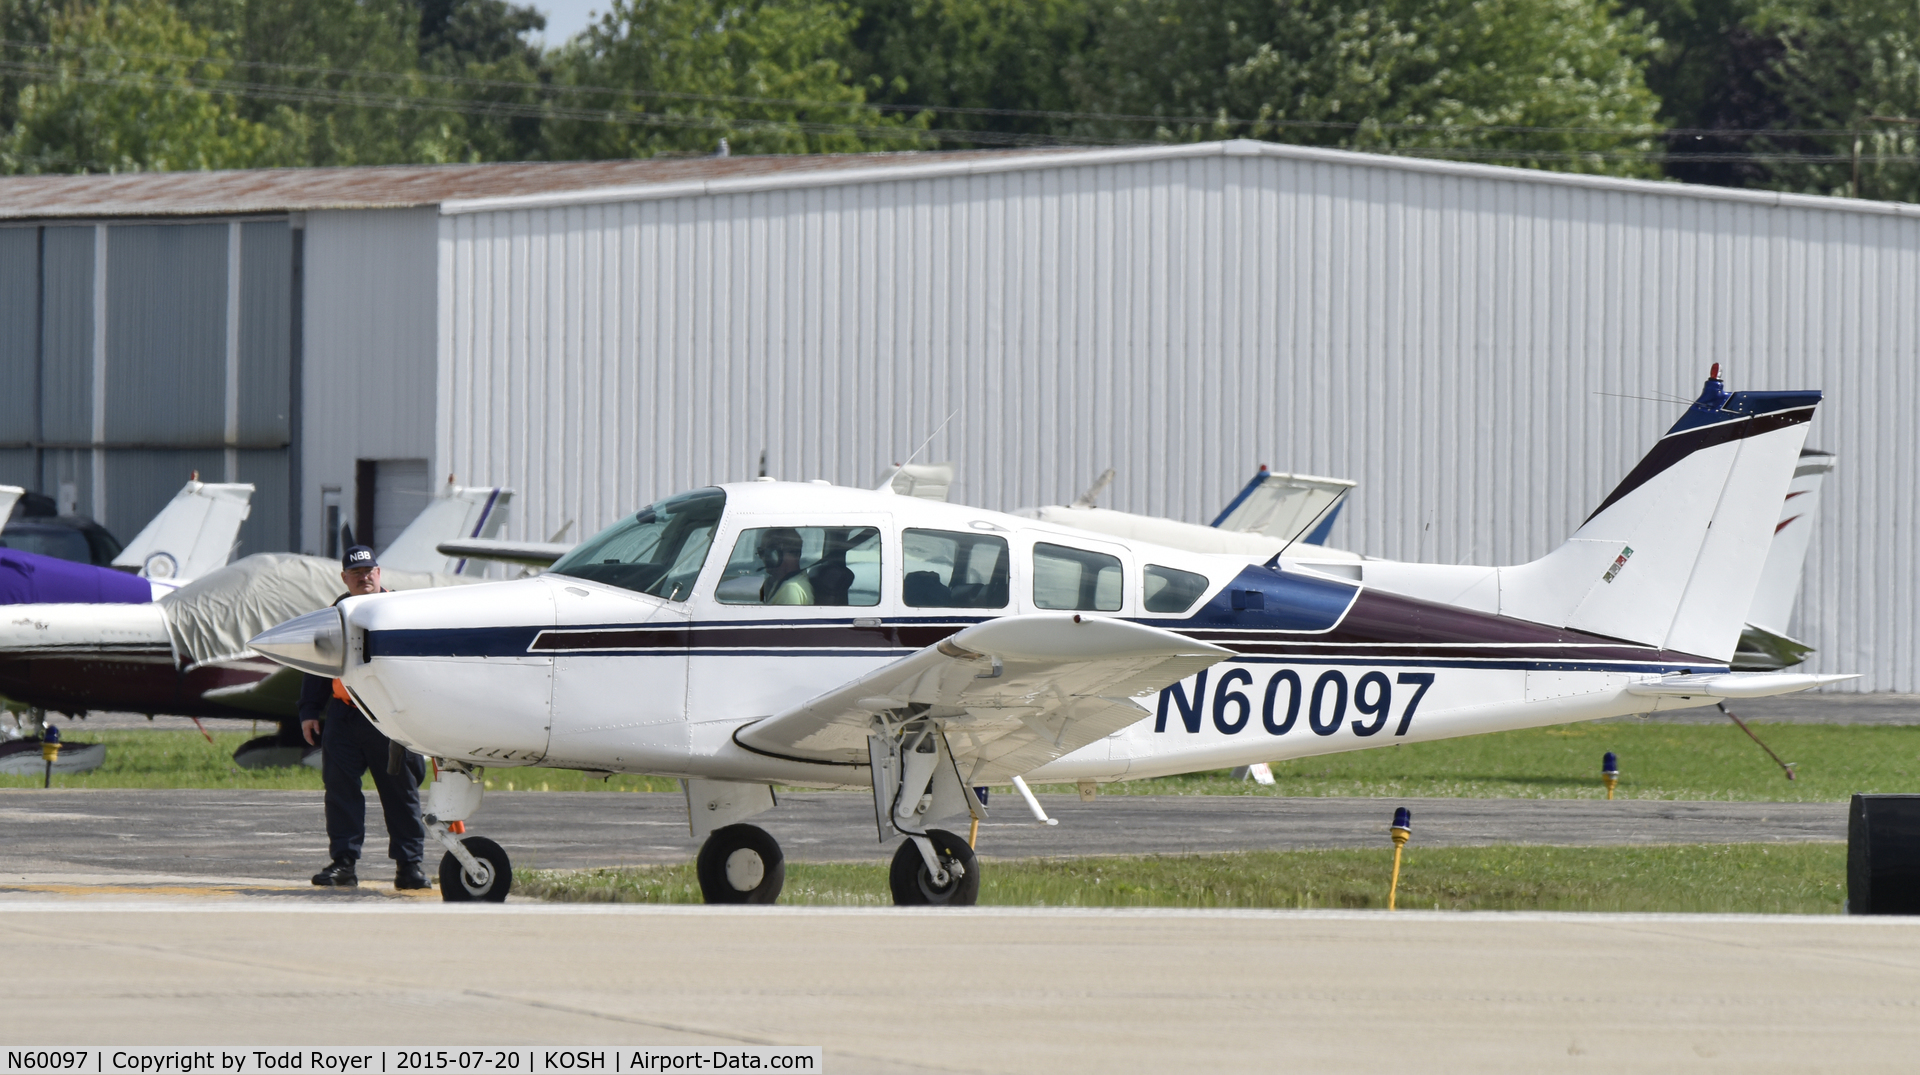 N60097, 1978 Beech C24R C/N MC-619, Airventure 2015